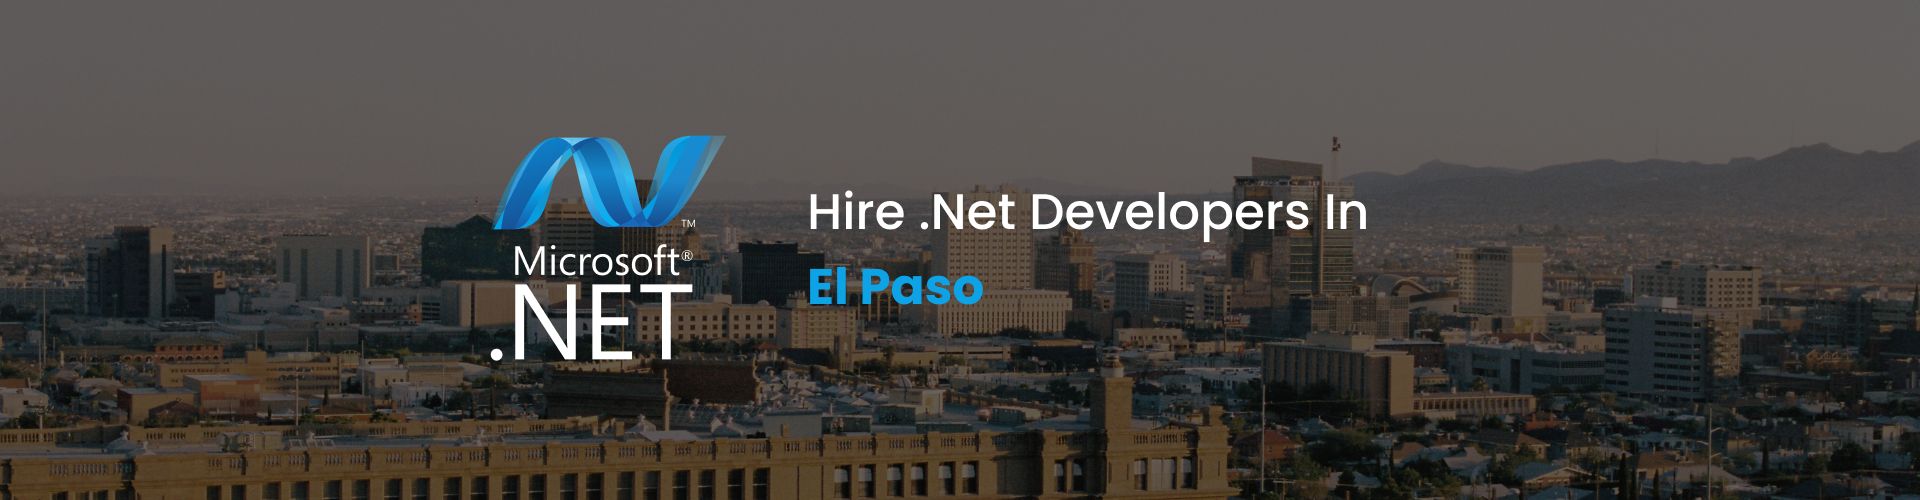 hire .net developers in el paso